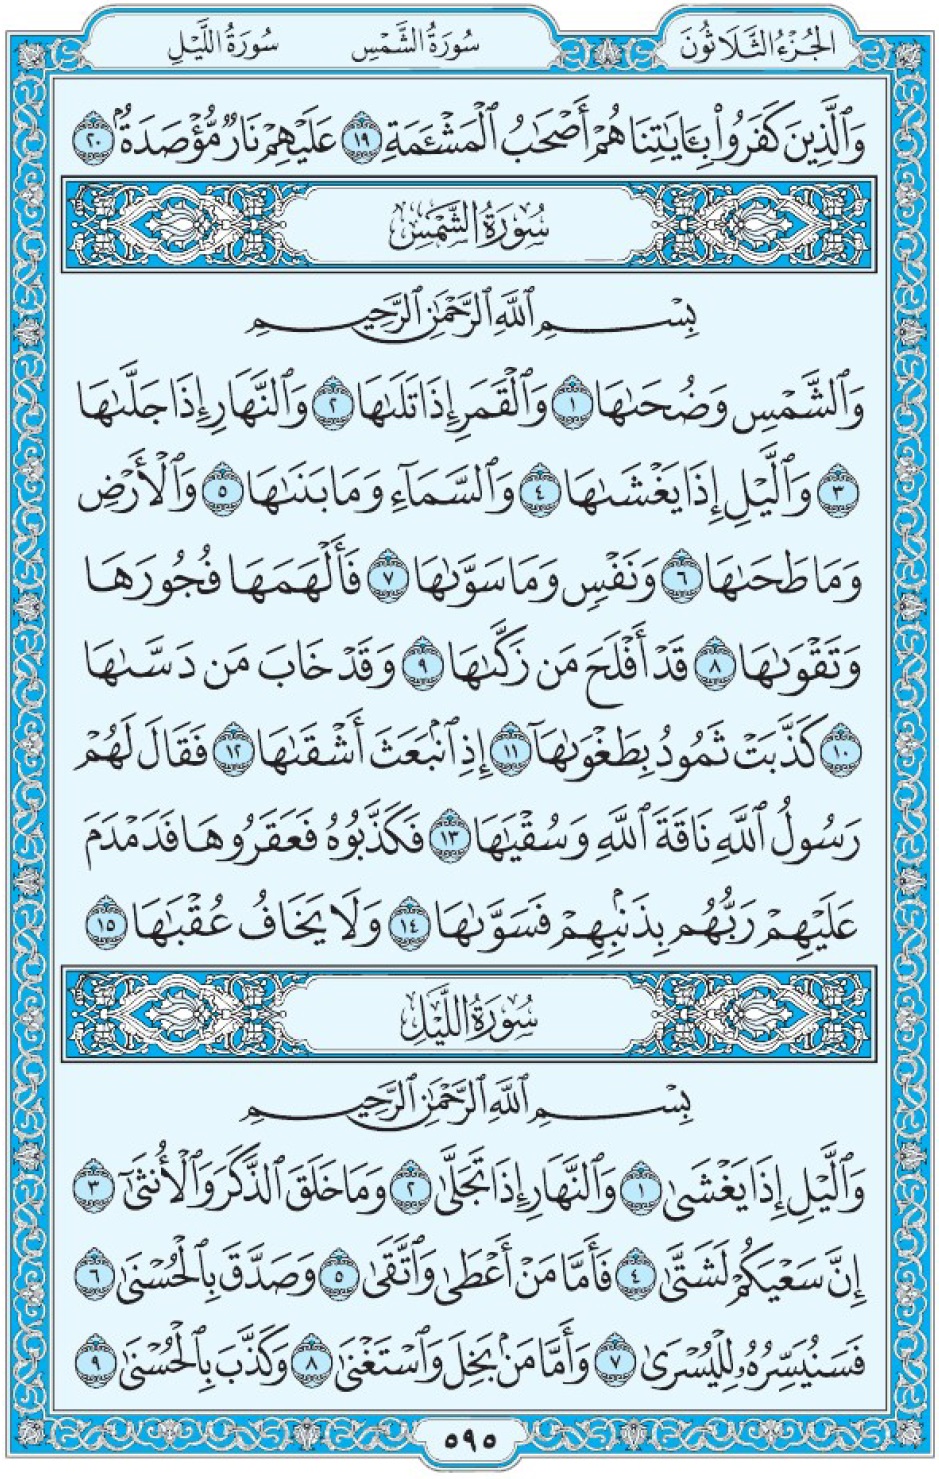 Коран Мединский мусхаф страница 595, сура 91 ащ-Щамс, 92 аль-Ляйль, سورة الشمس الليل 